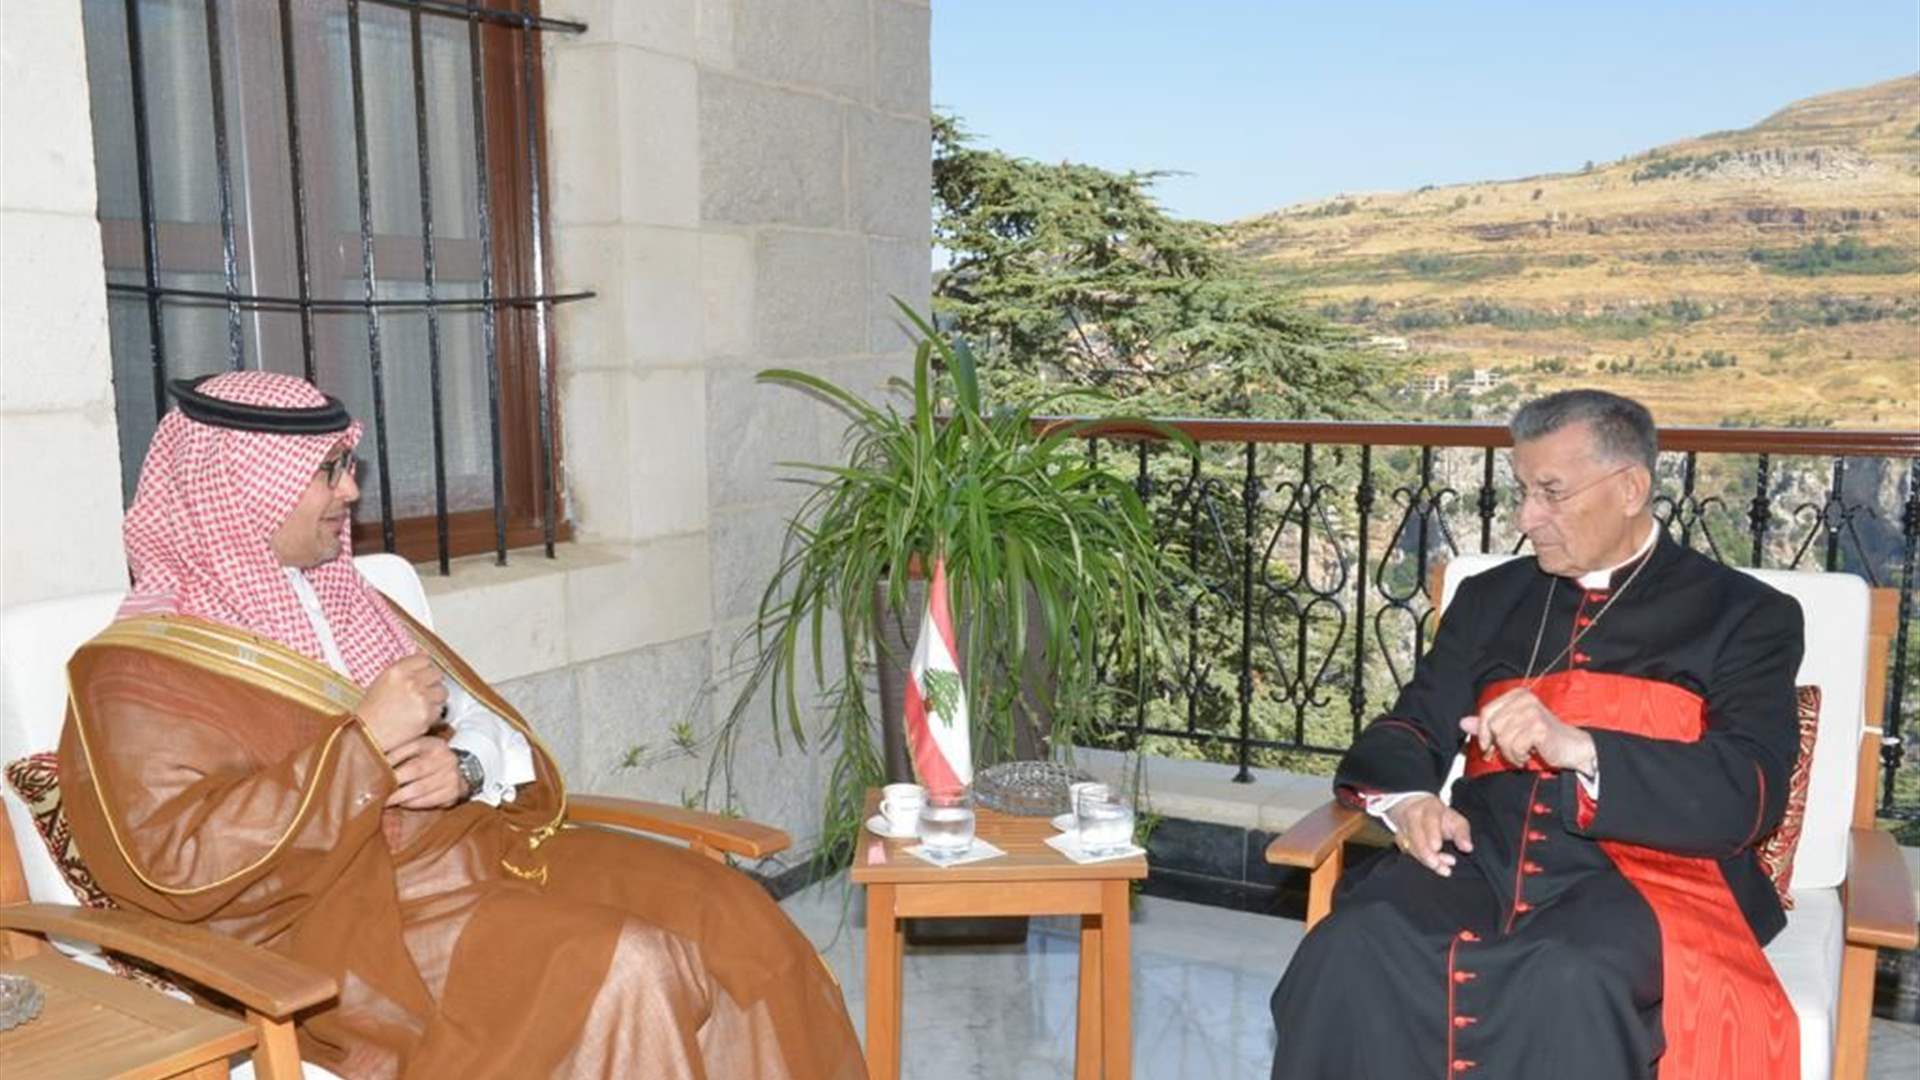 Bilateral relations in focus: Meeting between Maronite Patriarch and Saudi Ambassador